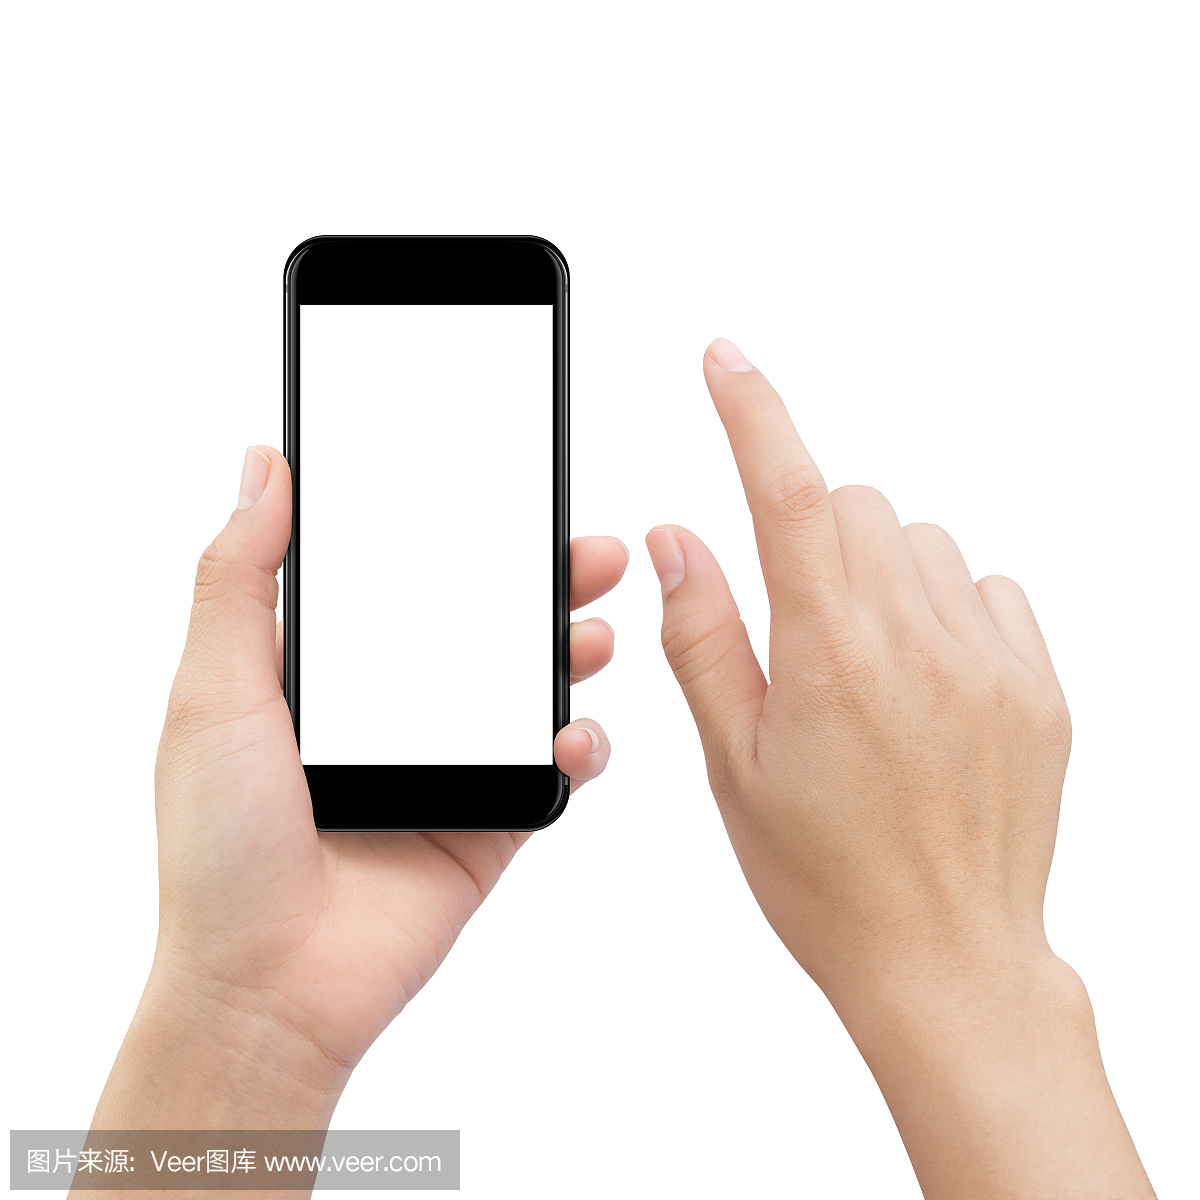 手触摸白色屏蔽智能手机屏幕,模拟手机移动空